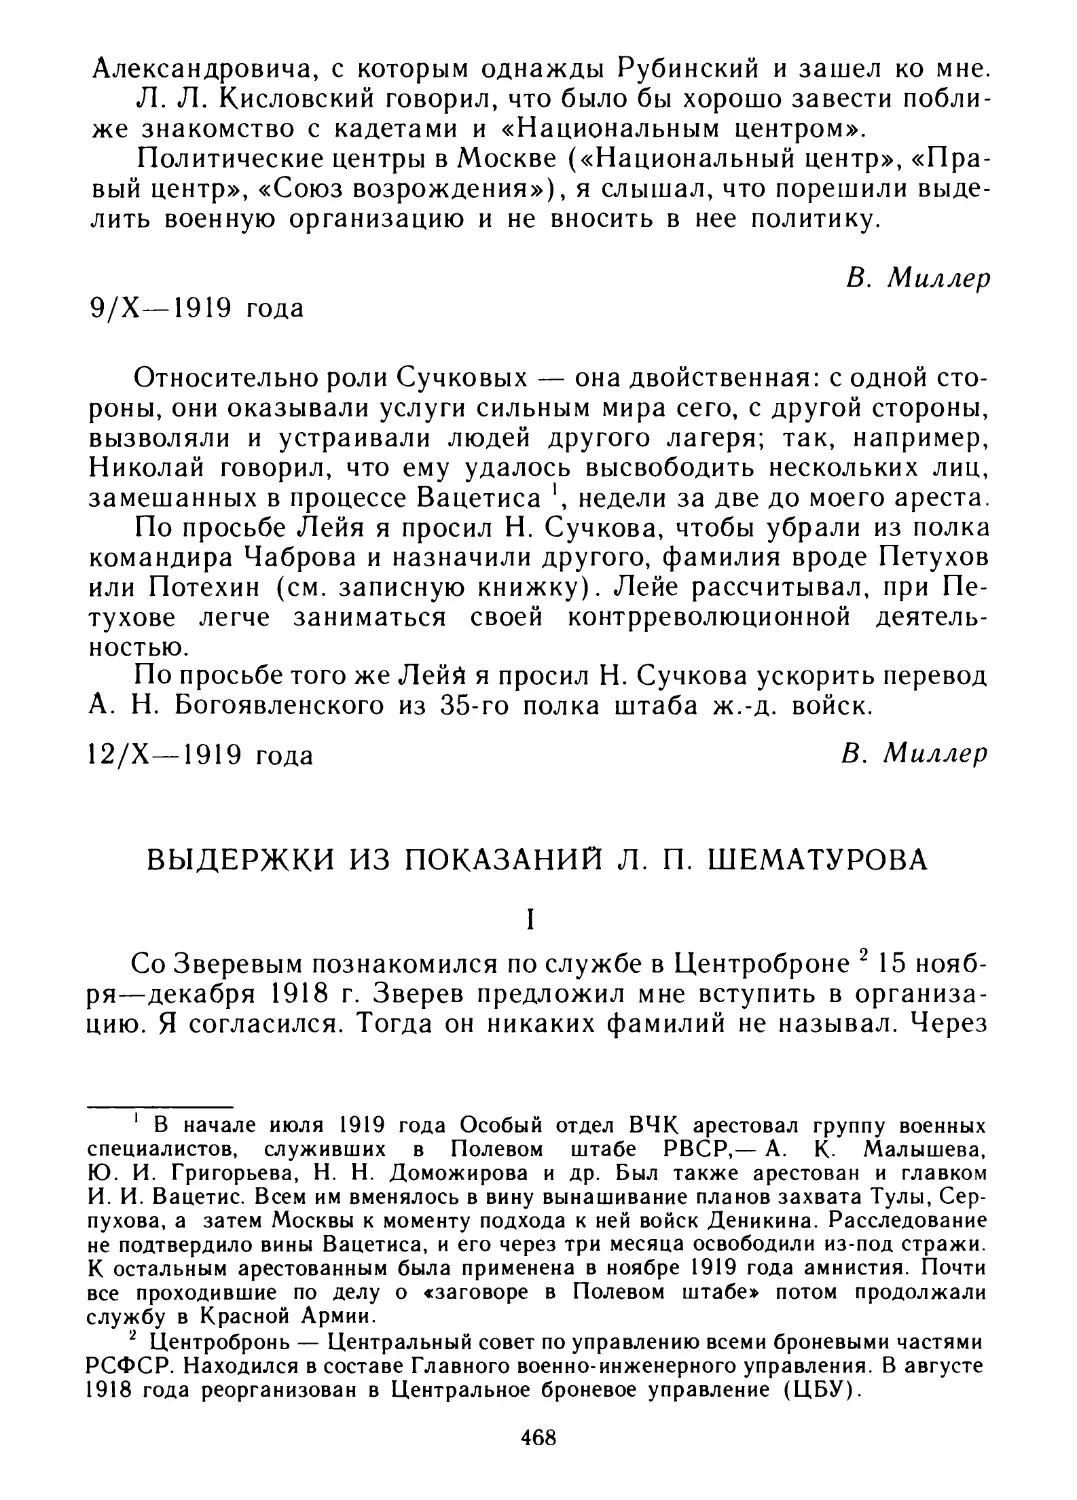 Выдержки из показаний Л. П. Шематурова